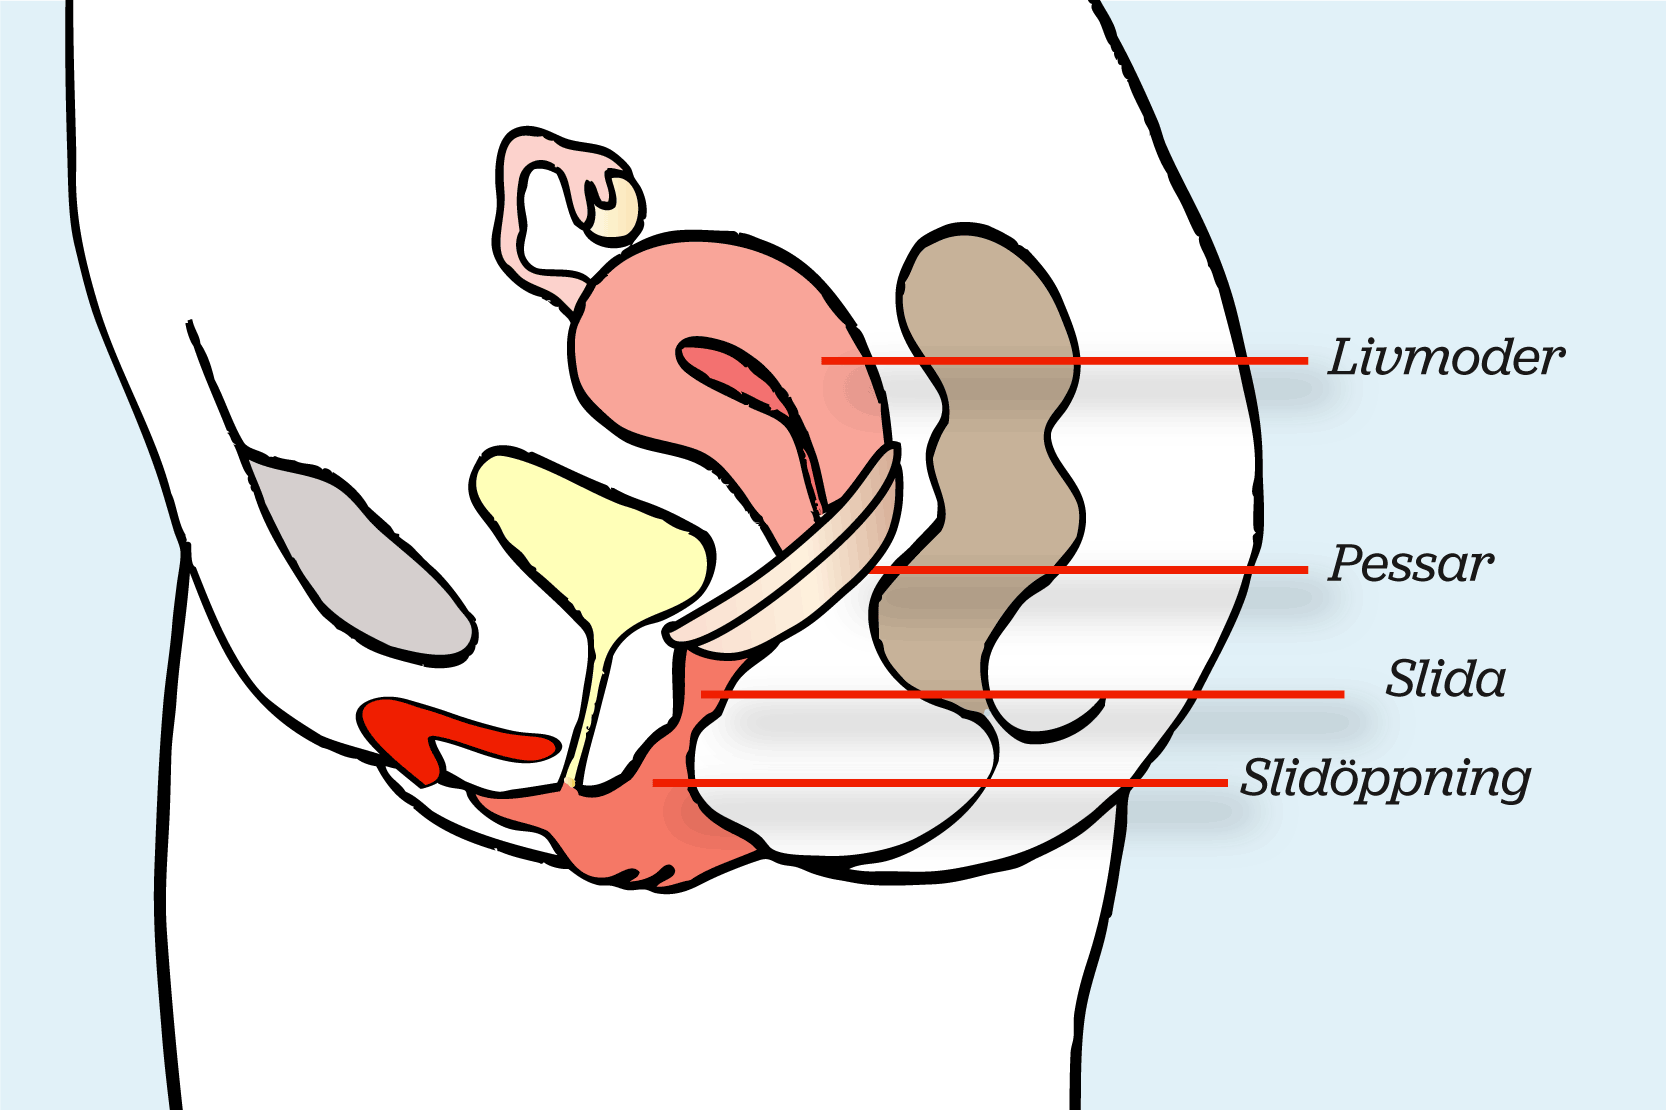 Underlivet i genomskärning, där ett vaginalpessar sitter i slidan, en bit upp och för livmodertappen. Illustration.